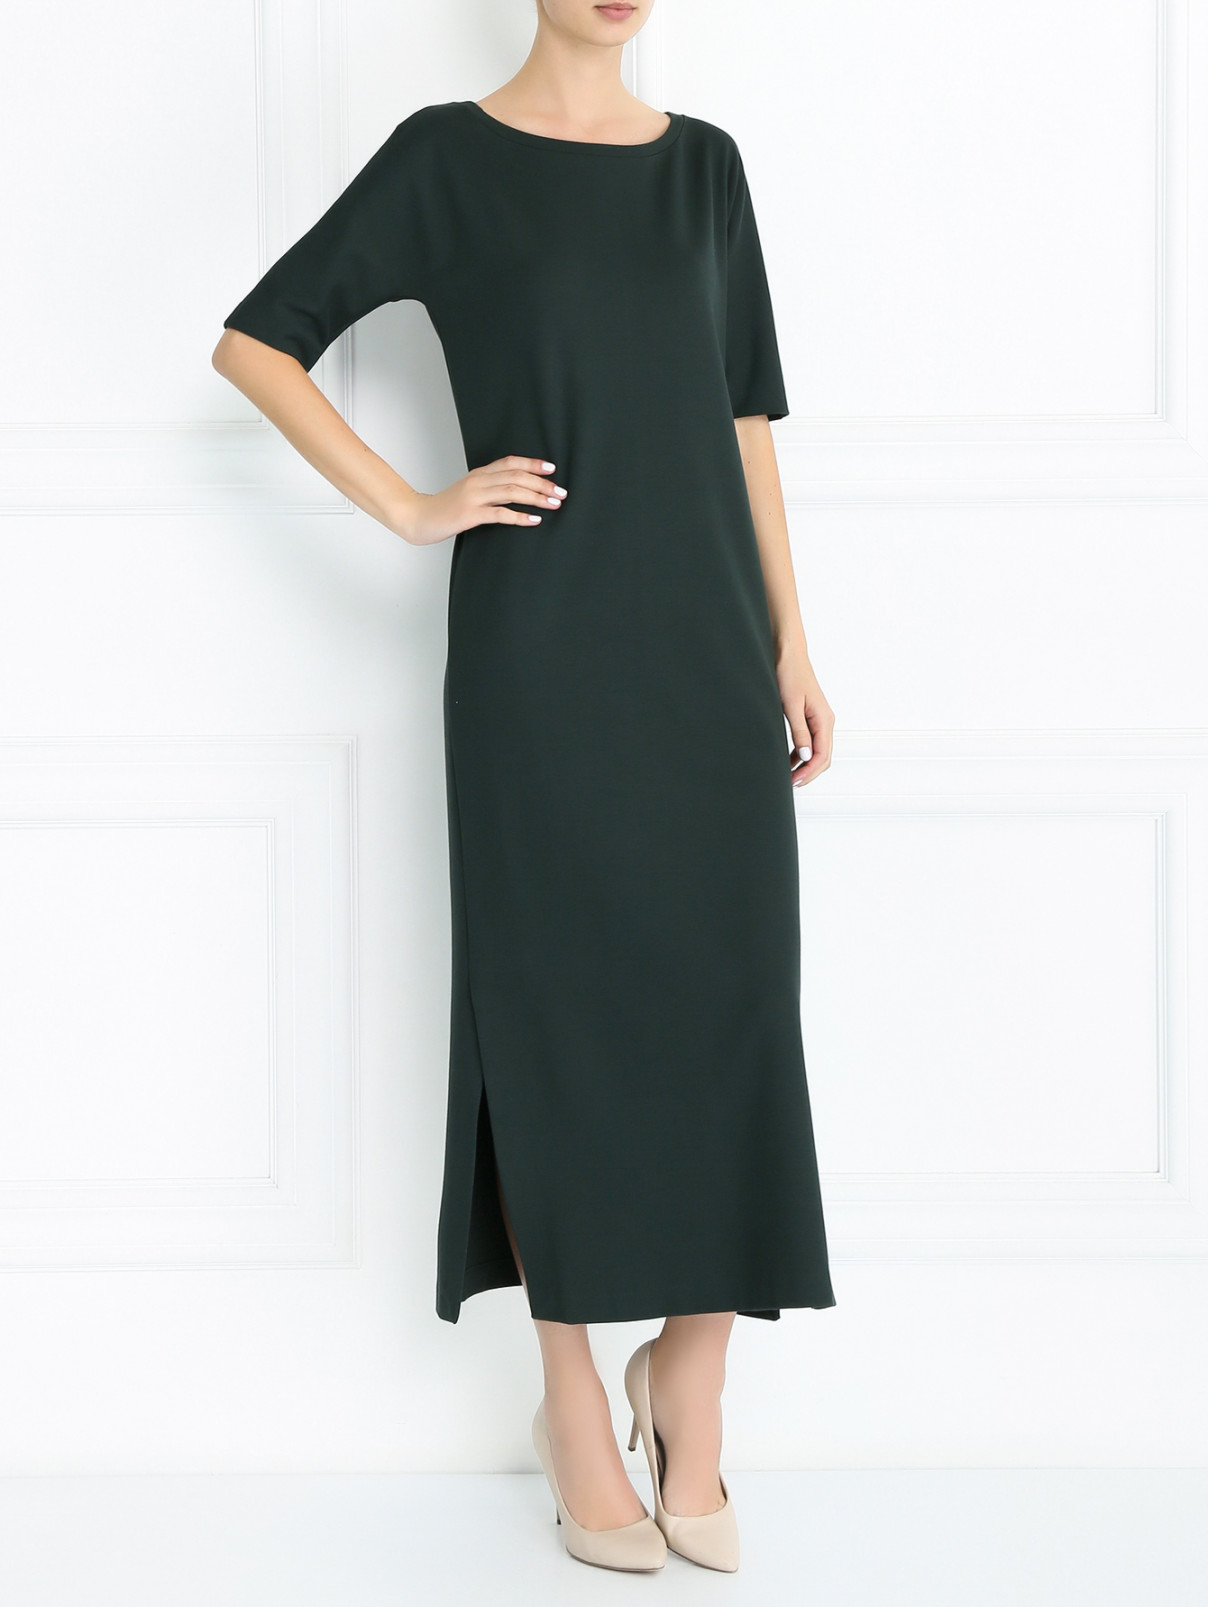 Платье трикотажное с короткими рукавами Weekend Max Mara  –  Модель Общий вид  – Цвет:  Зеленый